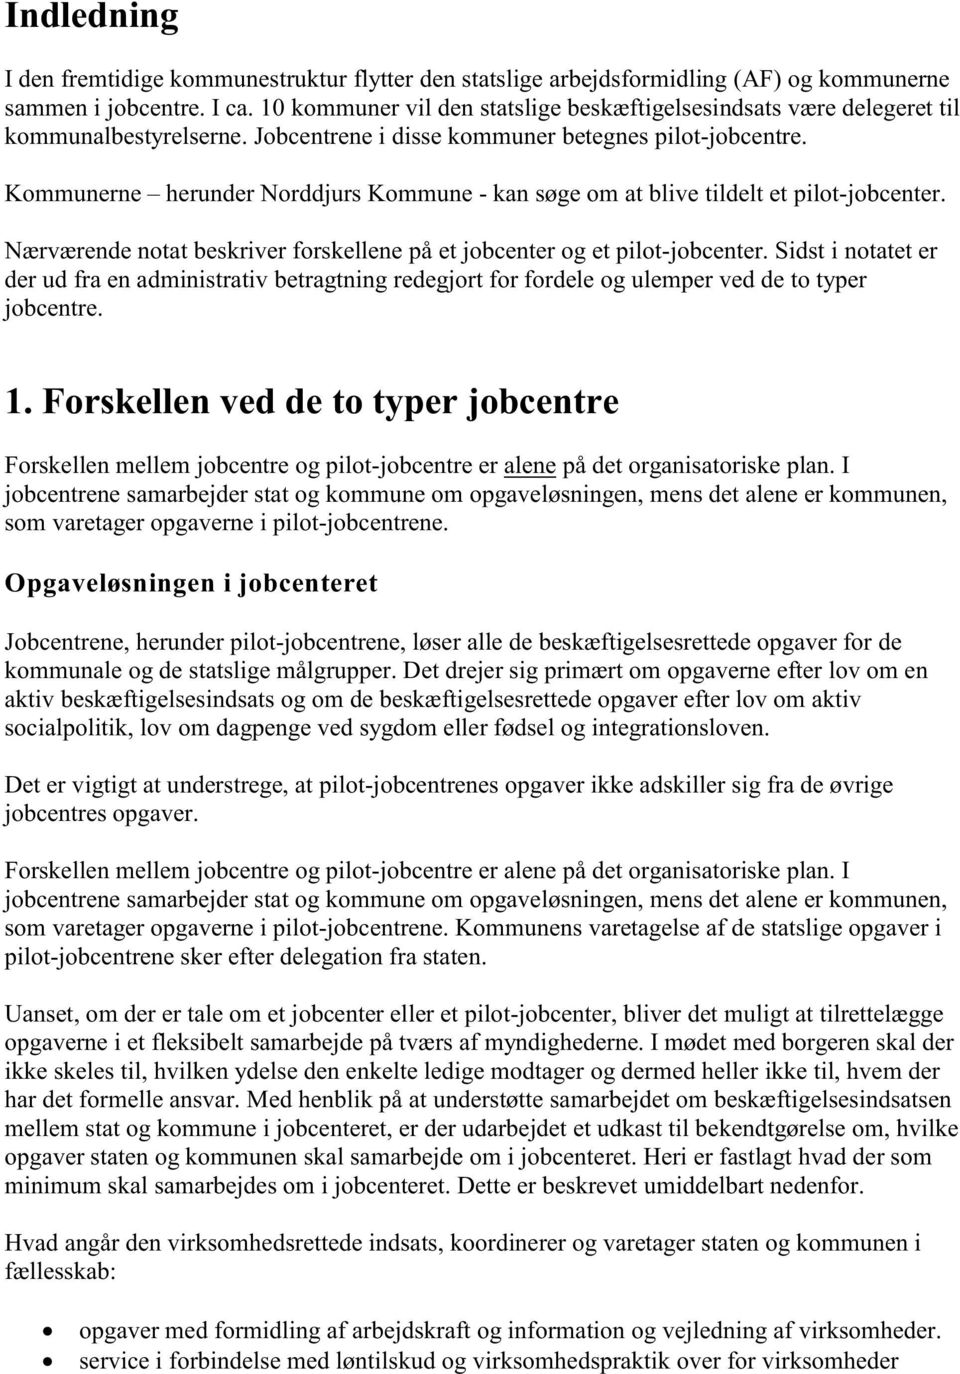 Kommunerne herunder Norddjurs Kommune - kan søge om at blive tildelt et pilot-jobcenter. Nærværende notat beskriver forskellene på et jobcenter og et pilot-jobcenter.